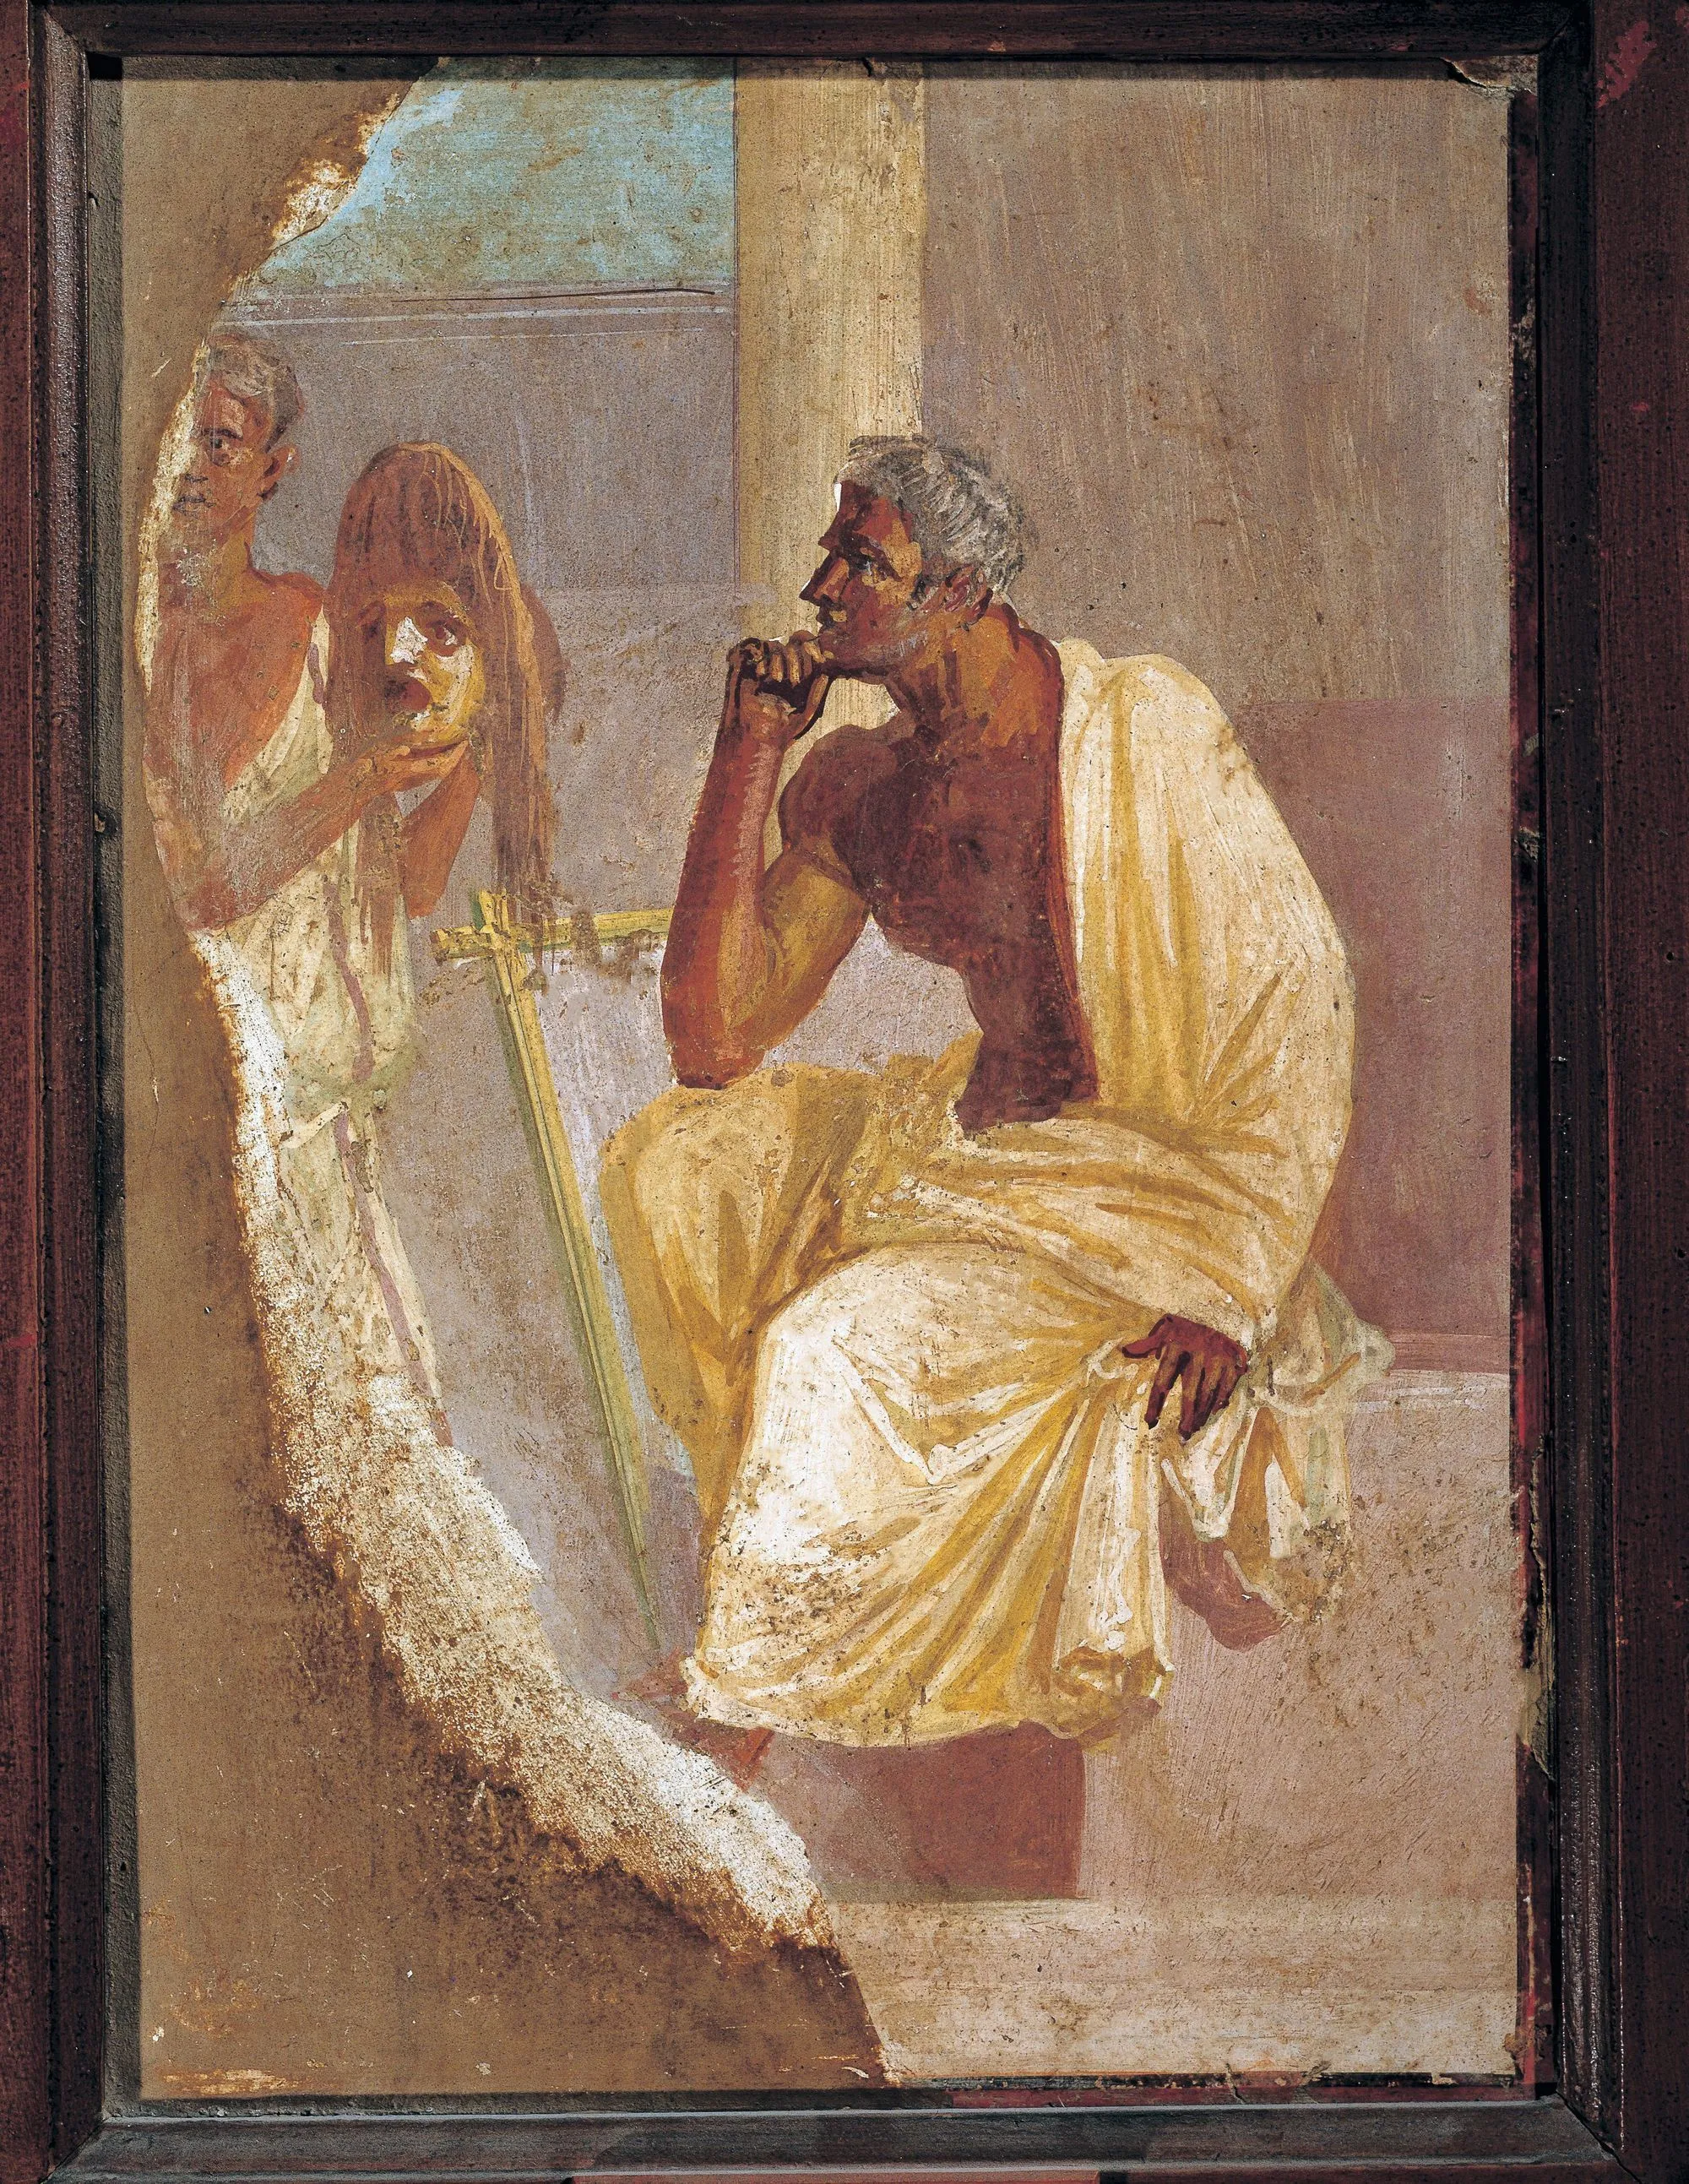 Un acteur et un masque tragique, fresque de Pompéi, Musée archéologique national, Naples.